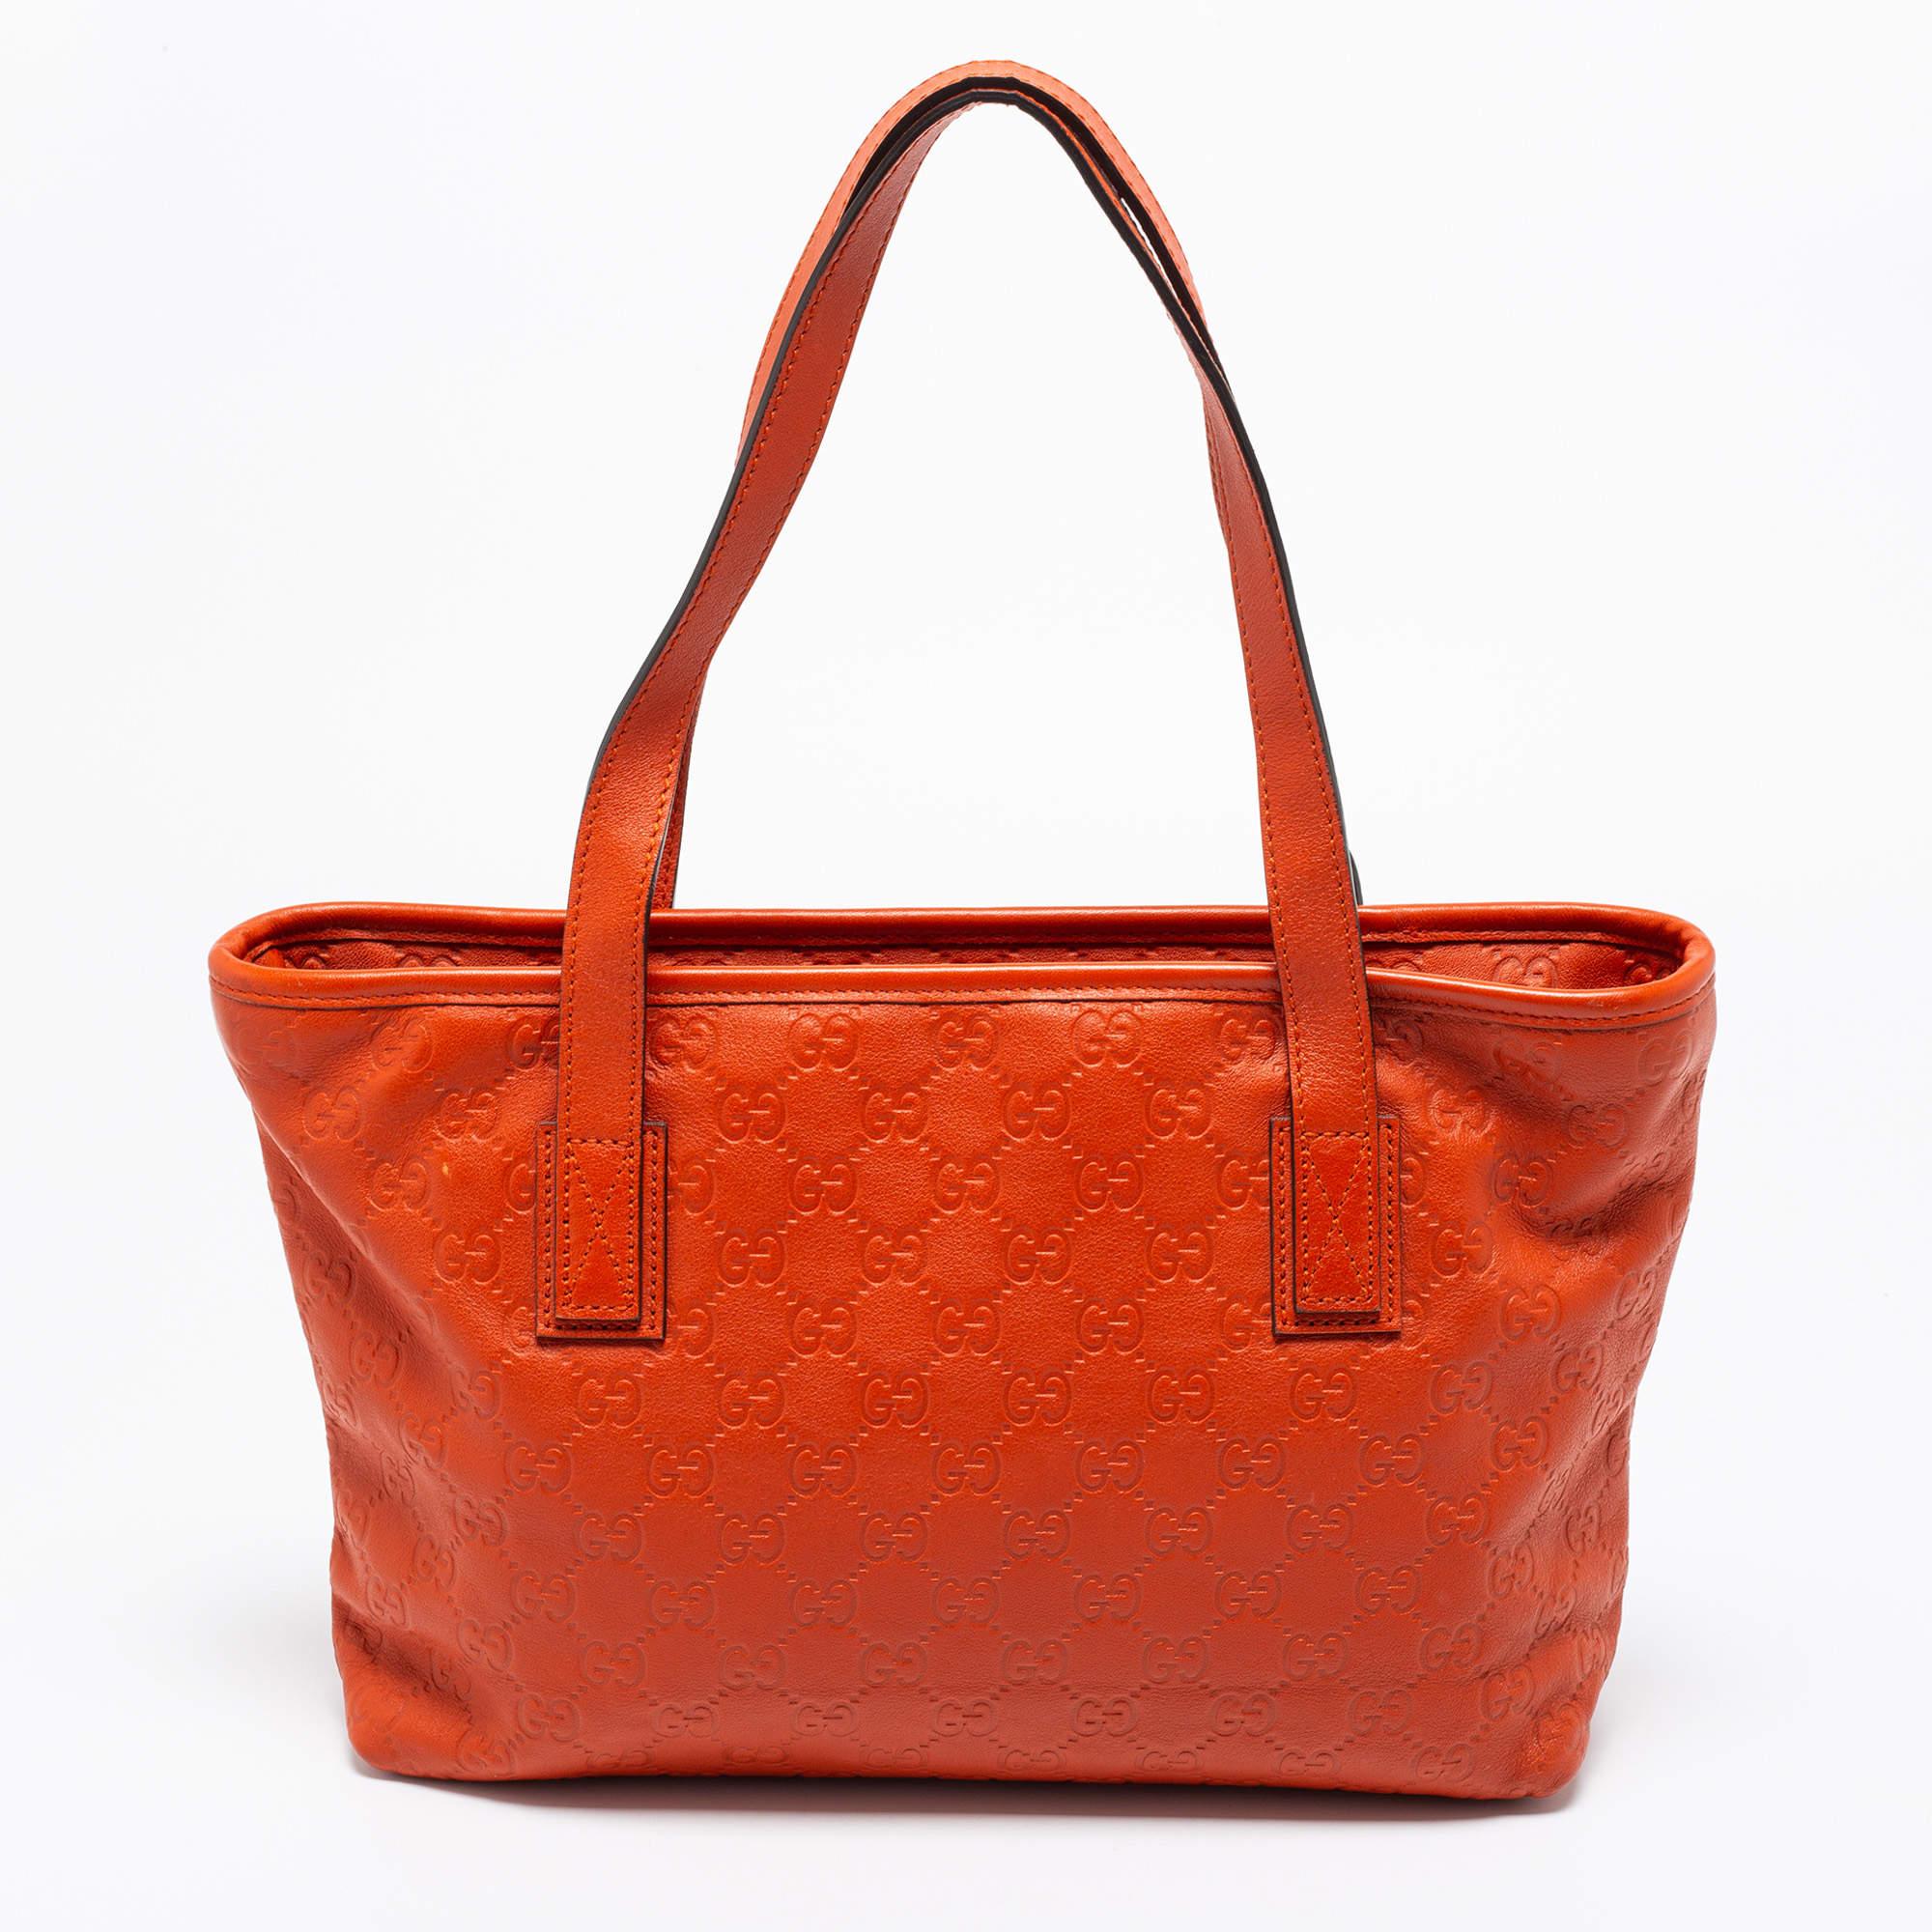 Gucci Orange Guccissima Leather Small Shopper Tote 1